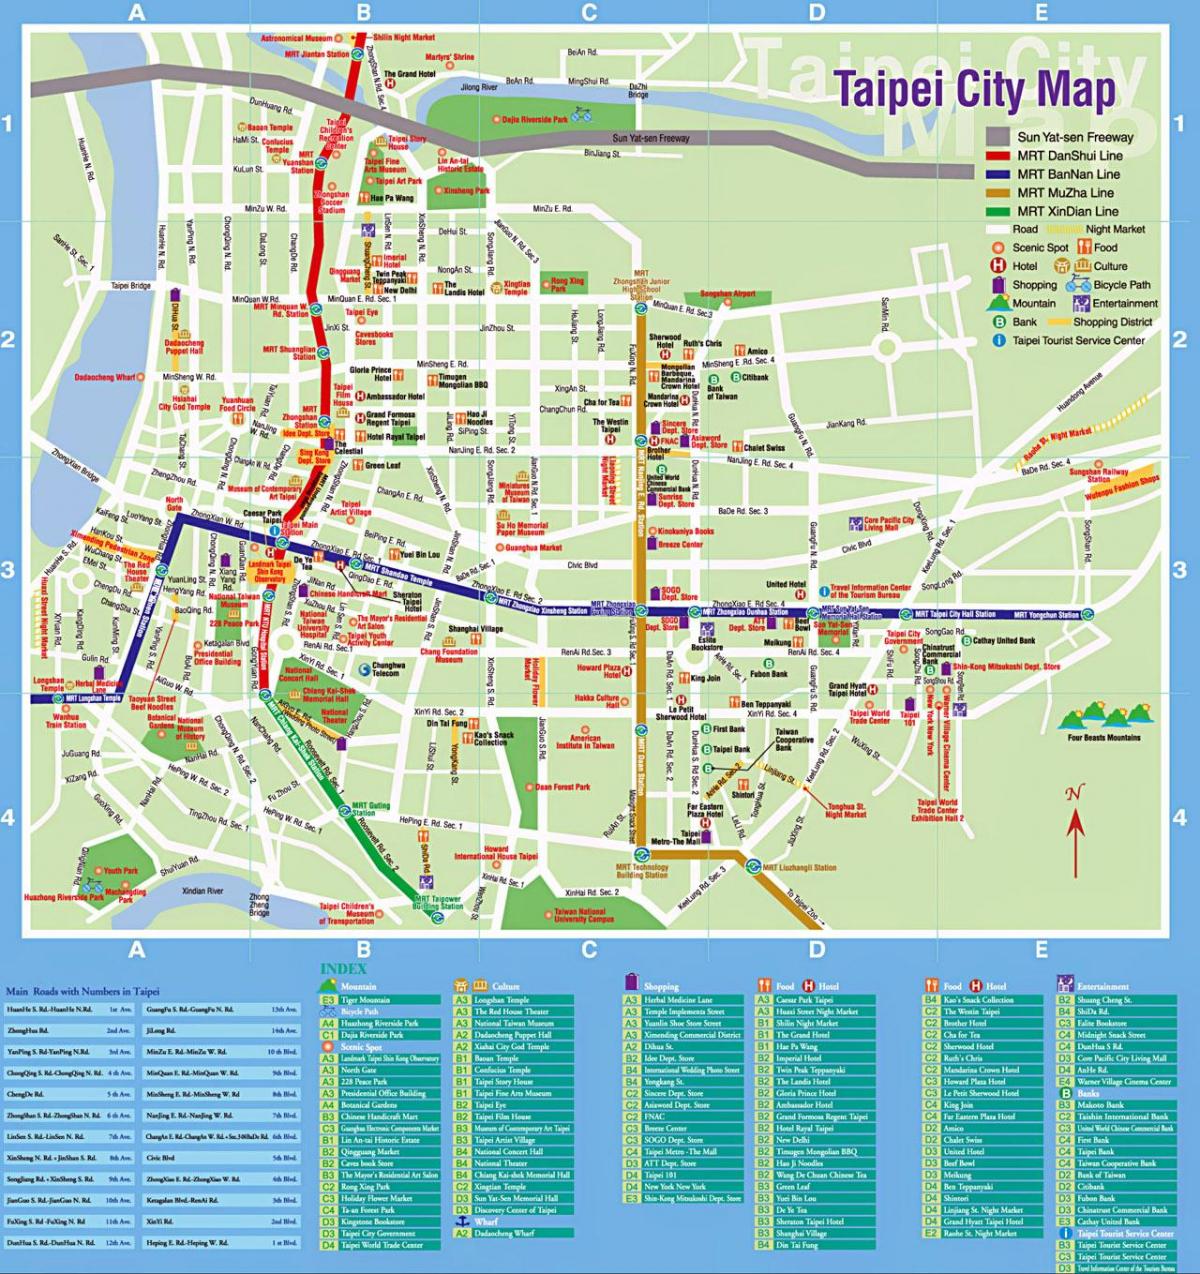 kort af Taipei city ferðamaður